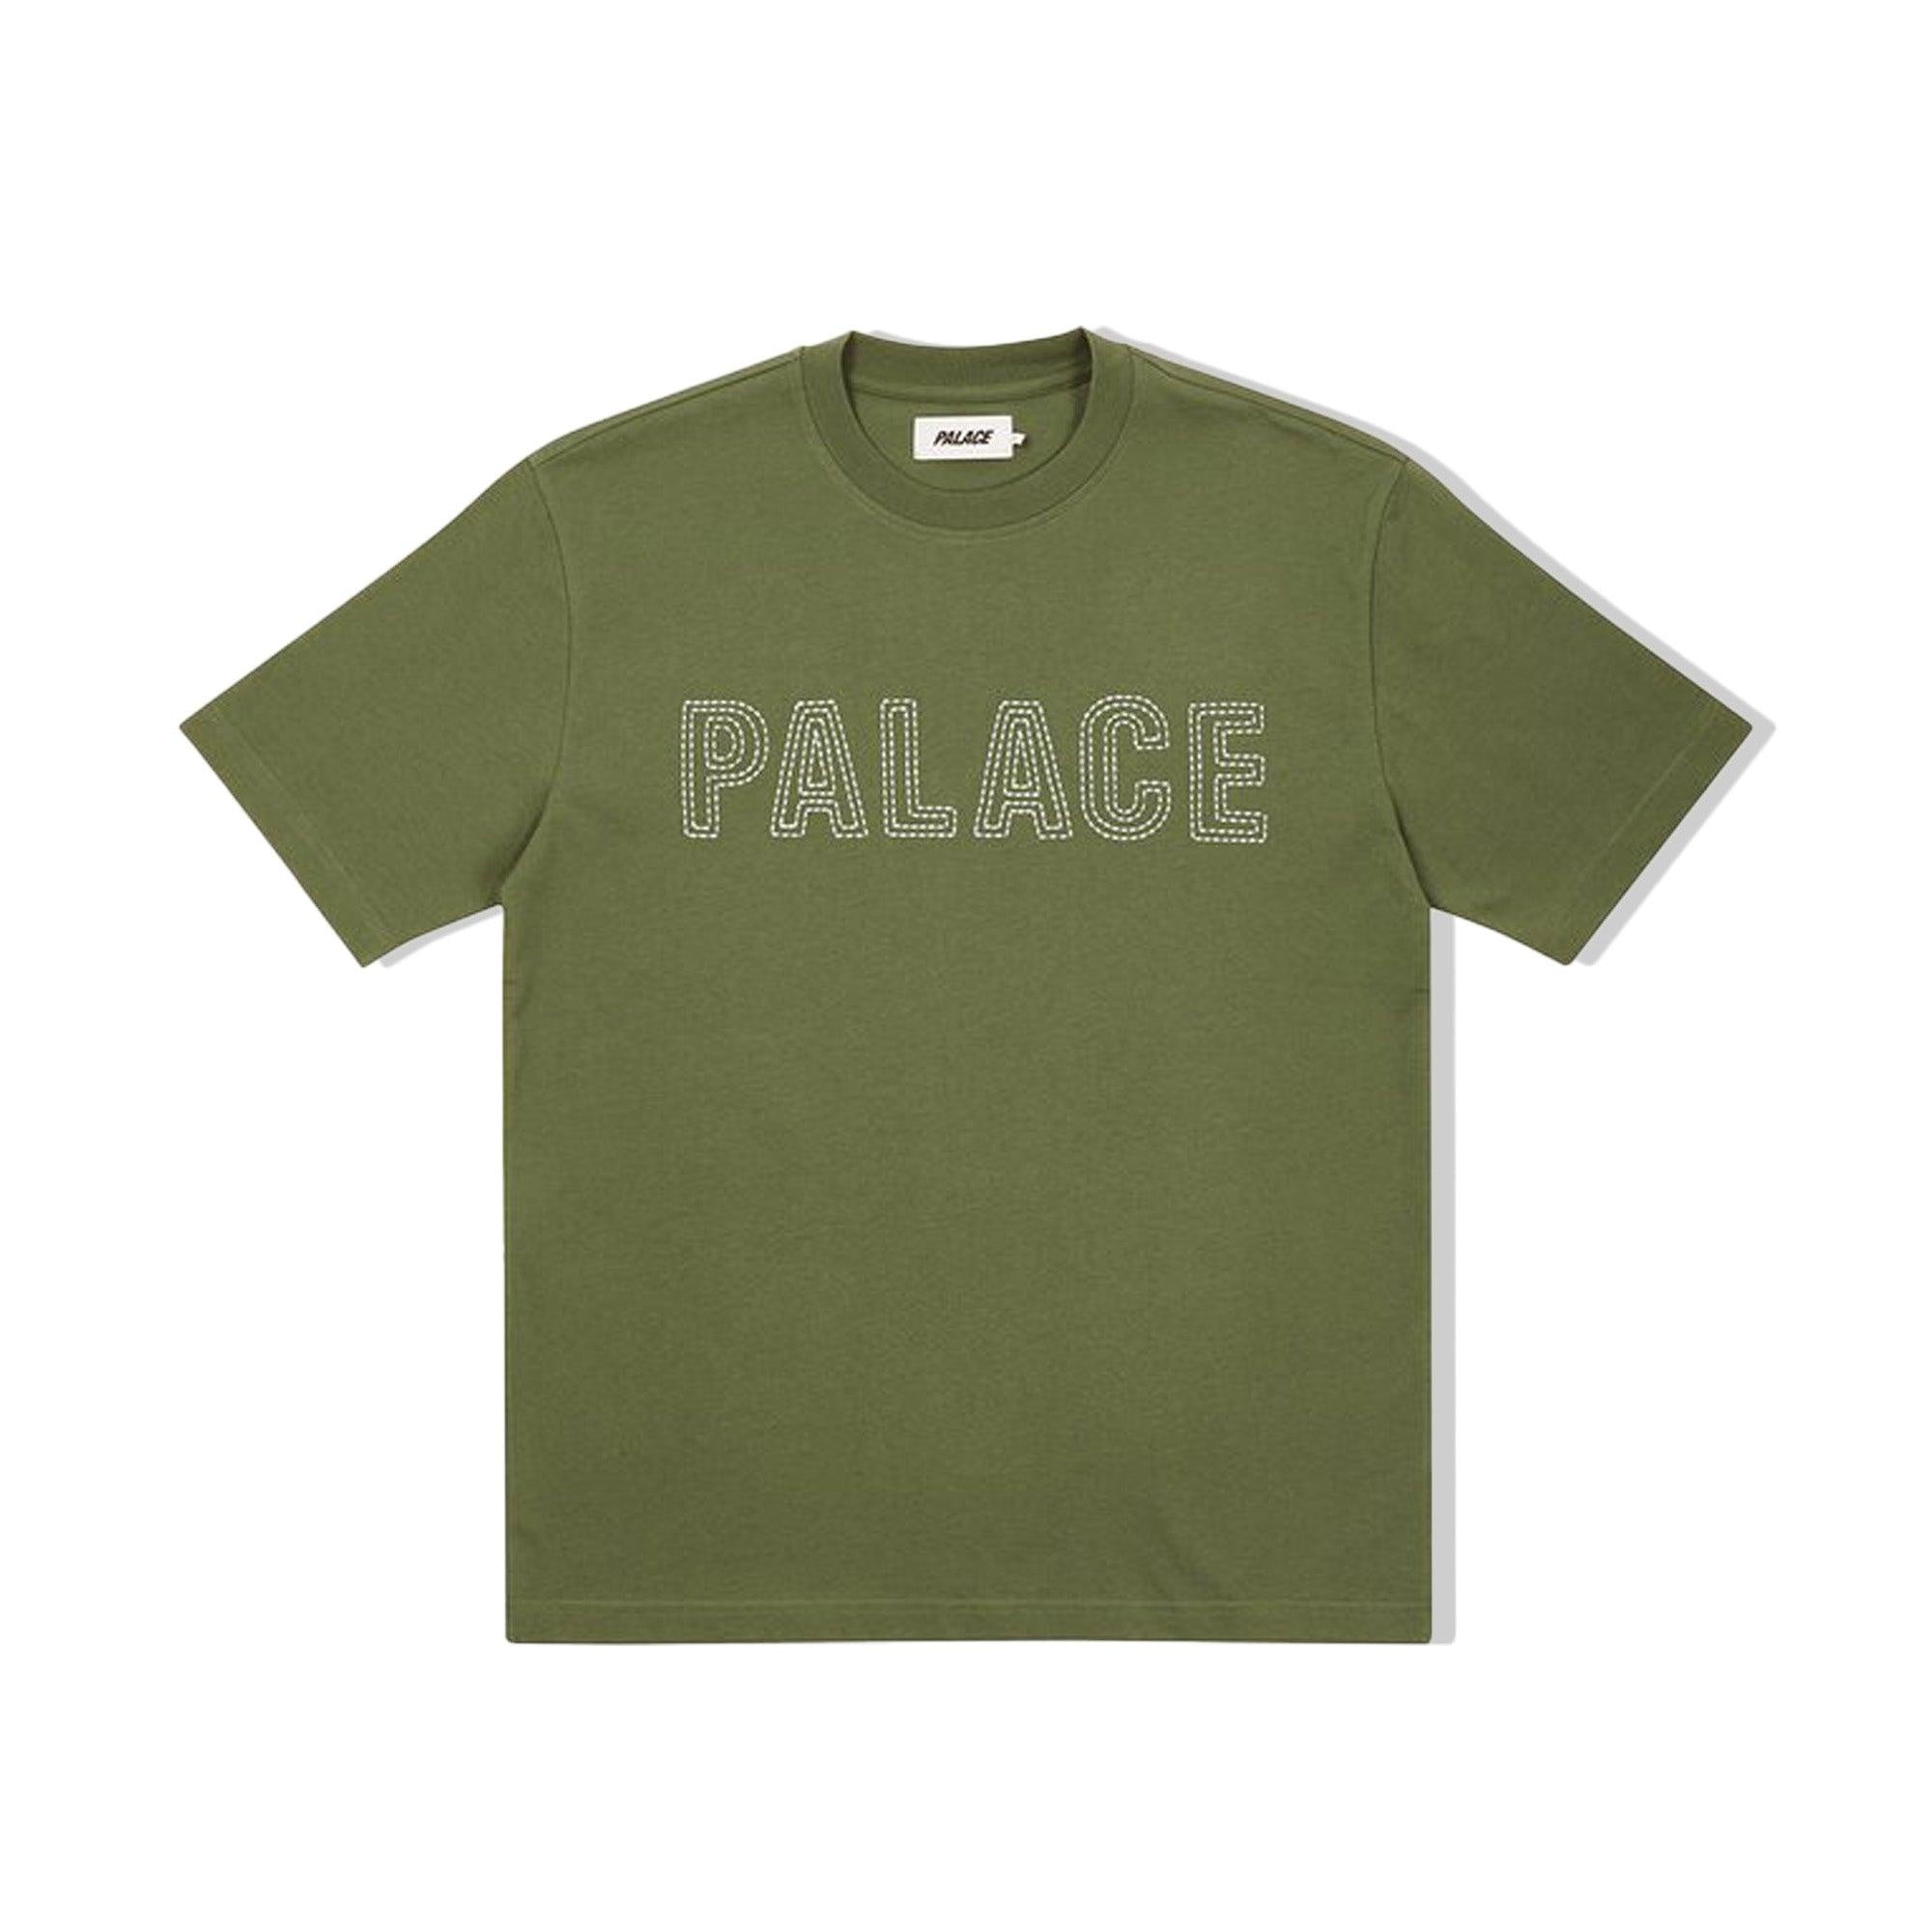 Buy Palace Palace Contrast Stitch Olive T-Shirt Online